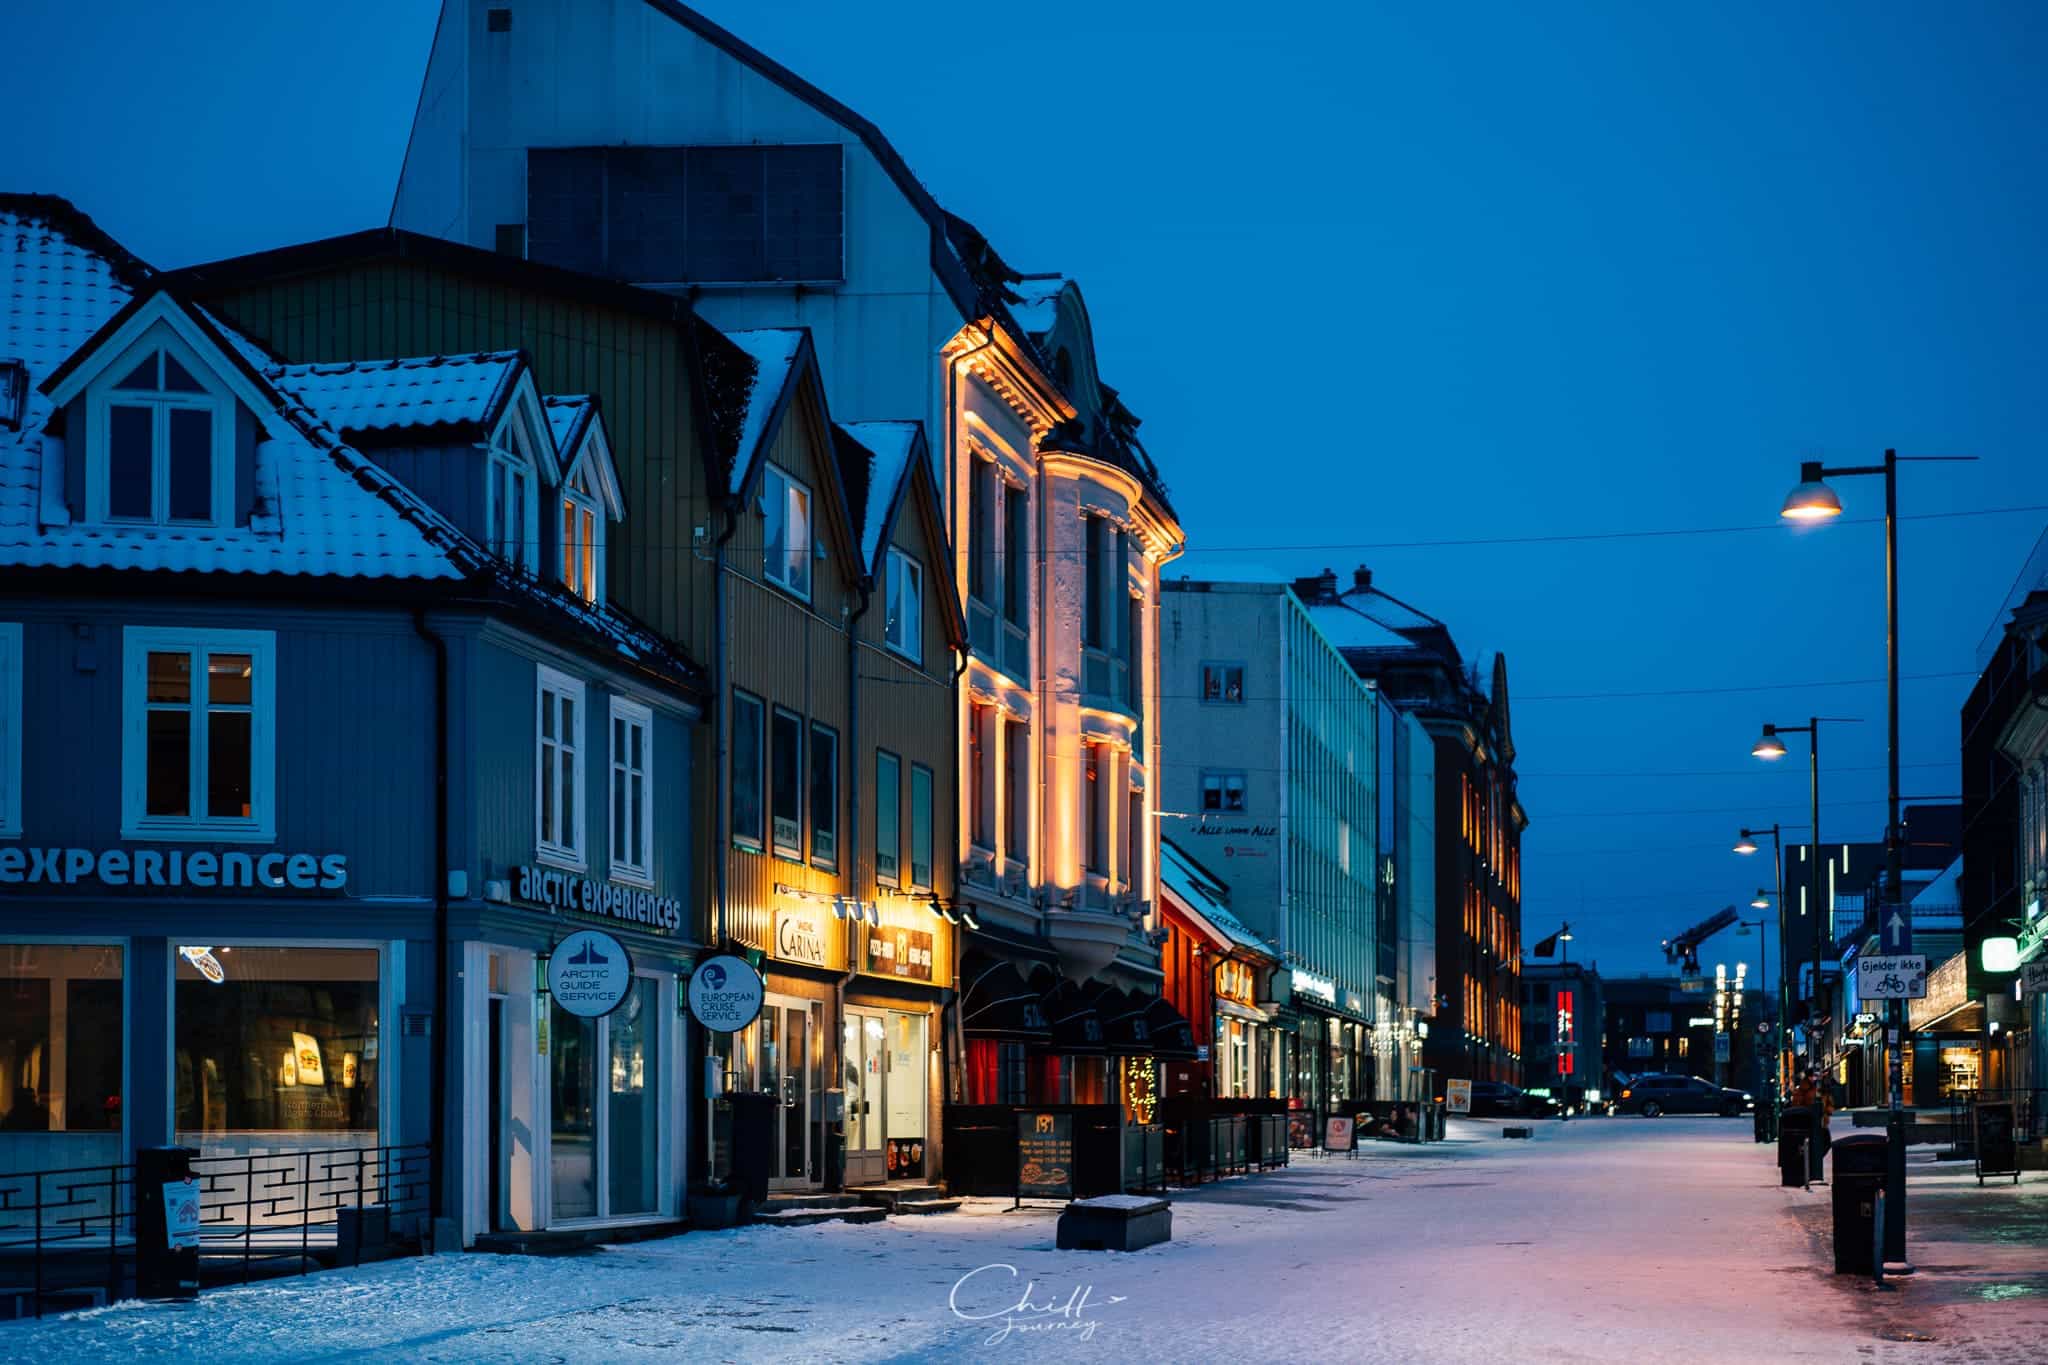 ล่าแสงเหนือที่ Tromso เมืองหลวงของประเทศนอร์เวย์ กับ AIS SIM2Fly